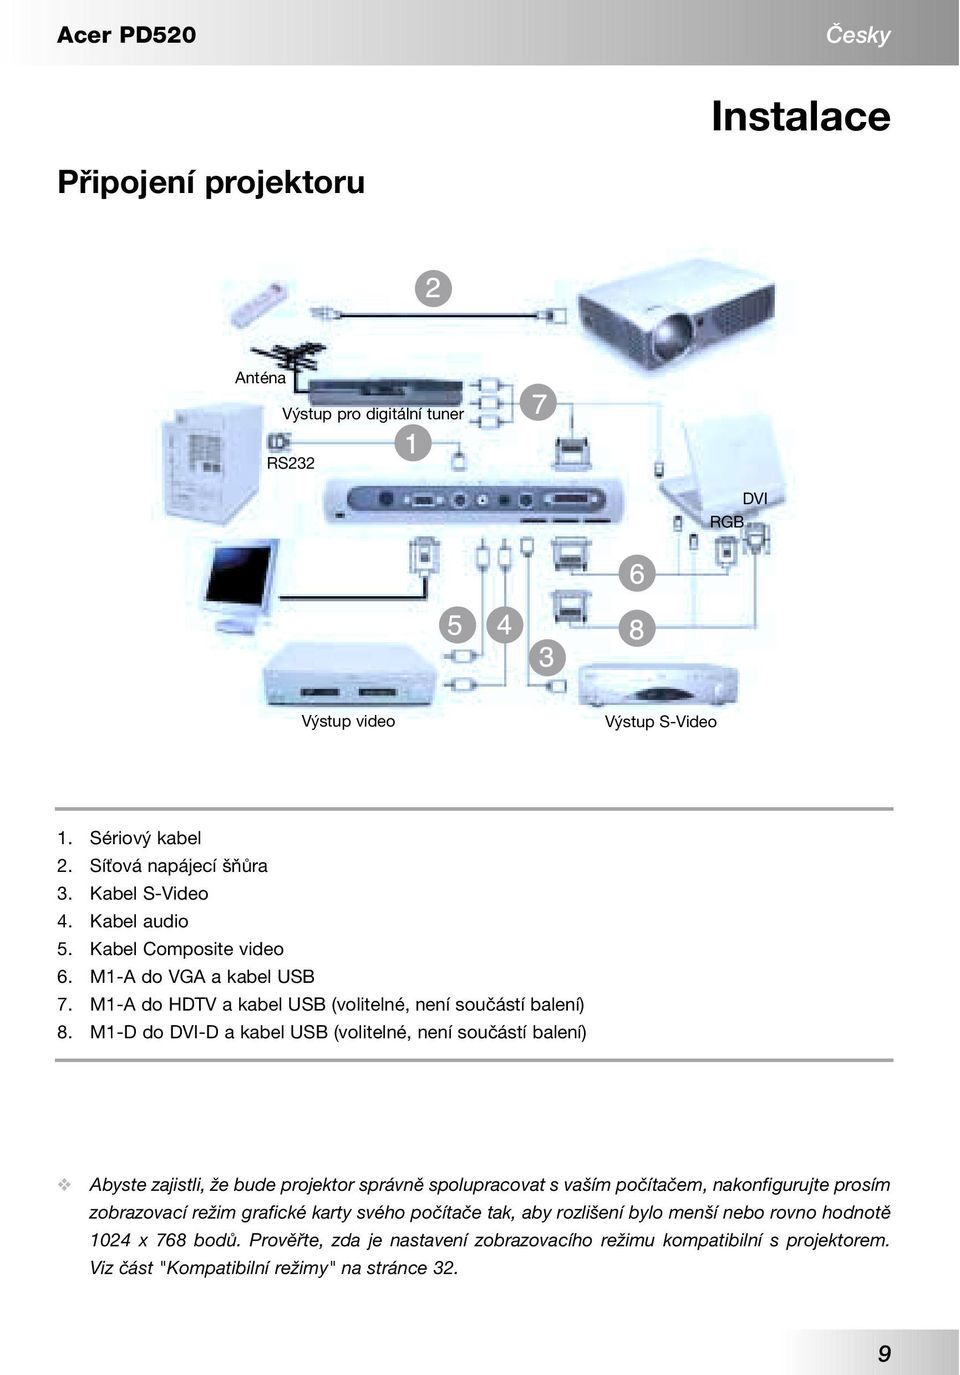 M1-D do DVI-D a kabel USB (volitelné, není součástí balení) Abyste zajistli, že bude projektor správně spolupracovat s vaším počítačem, nakonfigurujte prosím zobrazovací režim